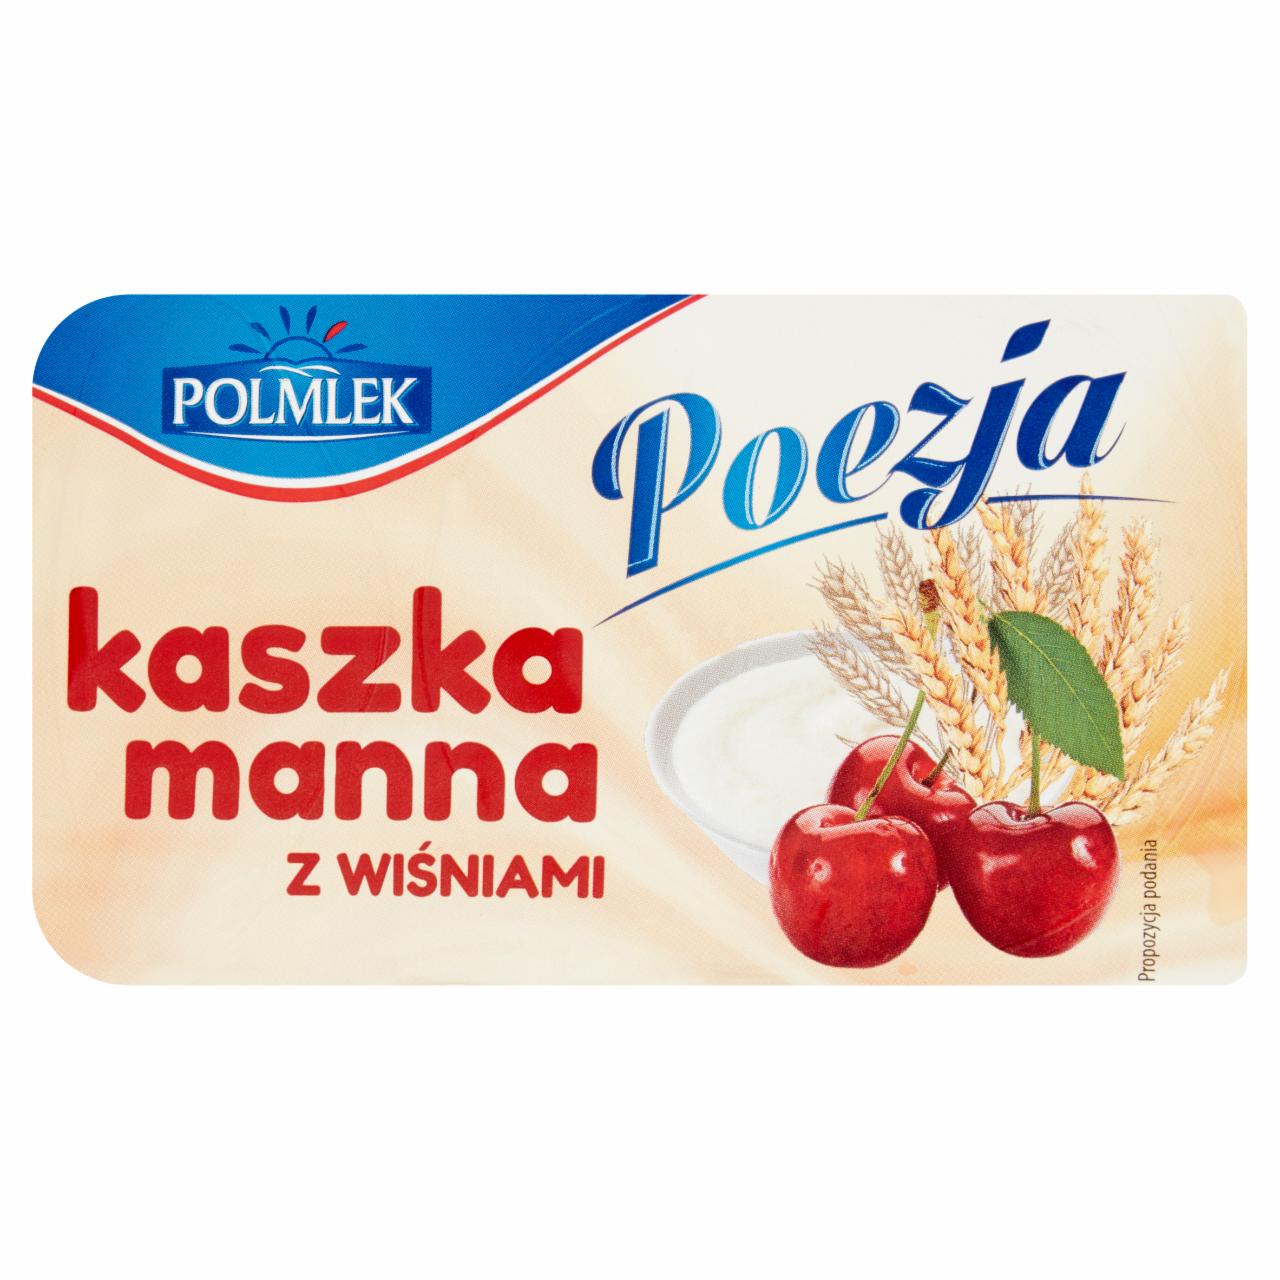 Zdjęcia - Polmlek Poezja Kaszka manna z wiśniami 150 g